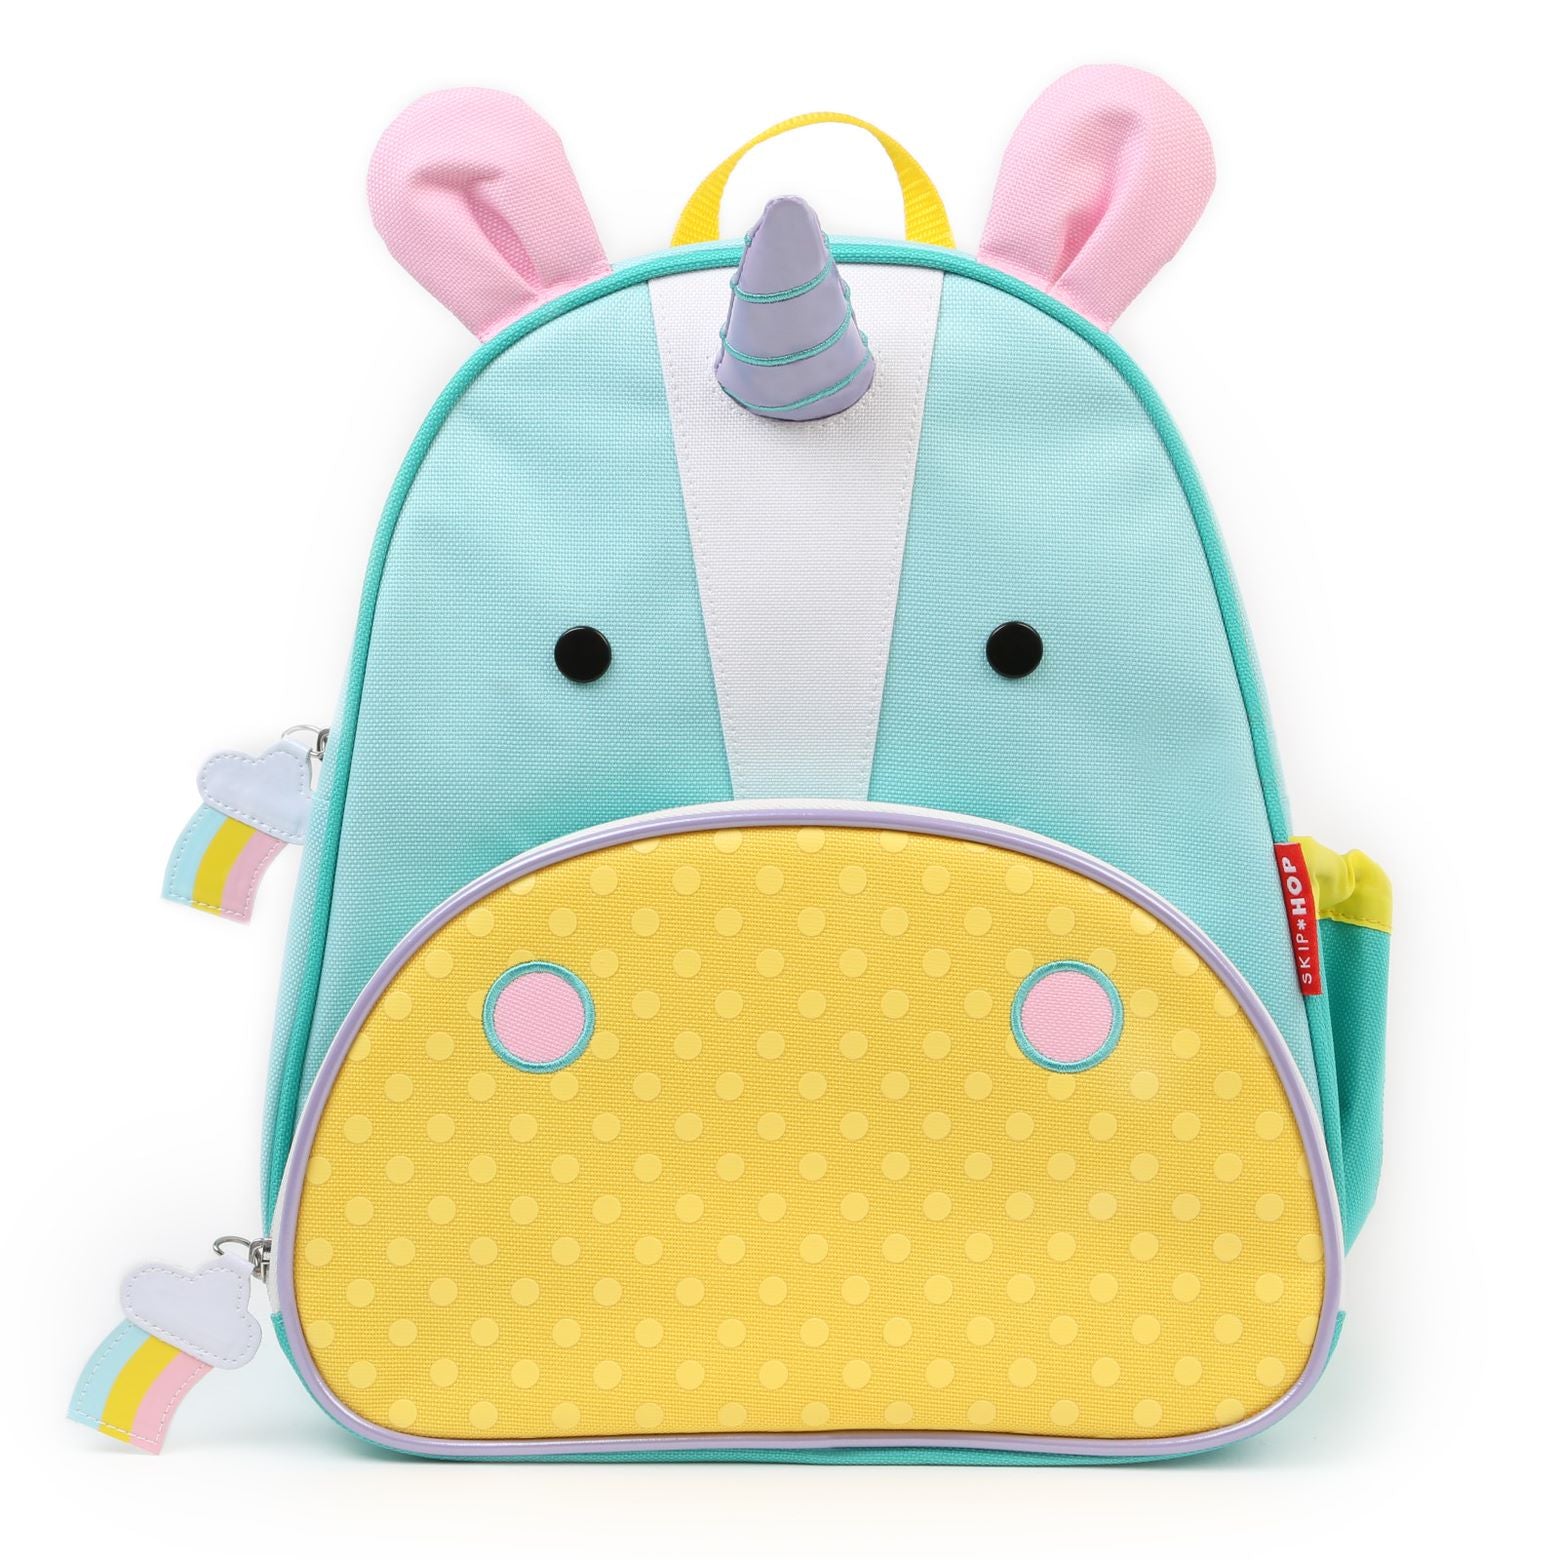 Skip Hop Zoo Backpack - Unicorn